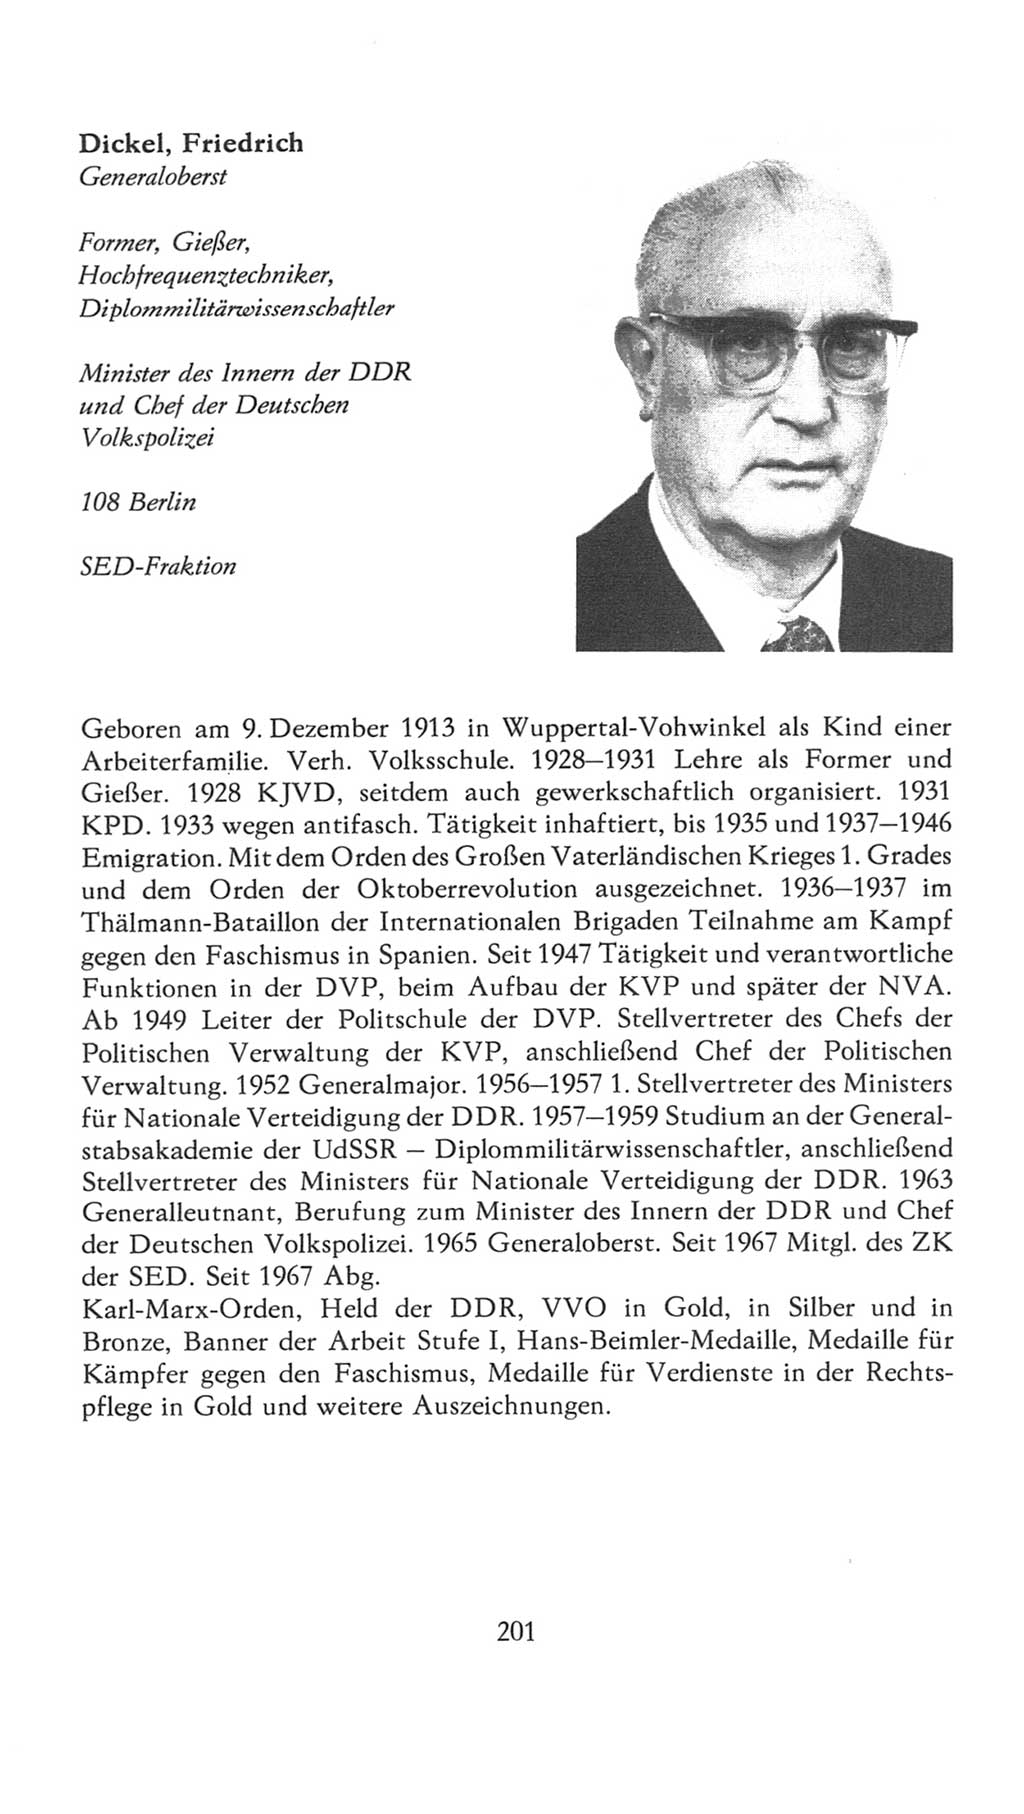 Volkskammer (VK) der Deutschen Demokratischen Republik (DDR), 7. Wahlperiode 1976-1981, Seite 201 (VK. DDR 7. WP. 1976-1981, S. 201)